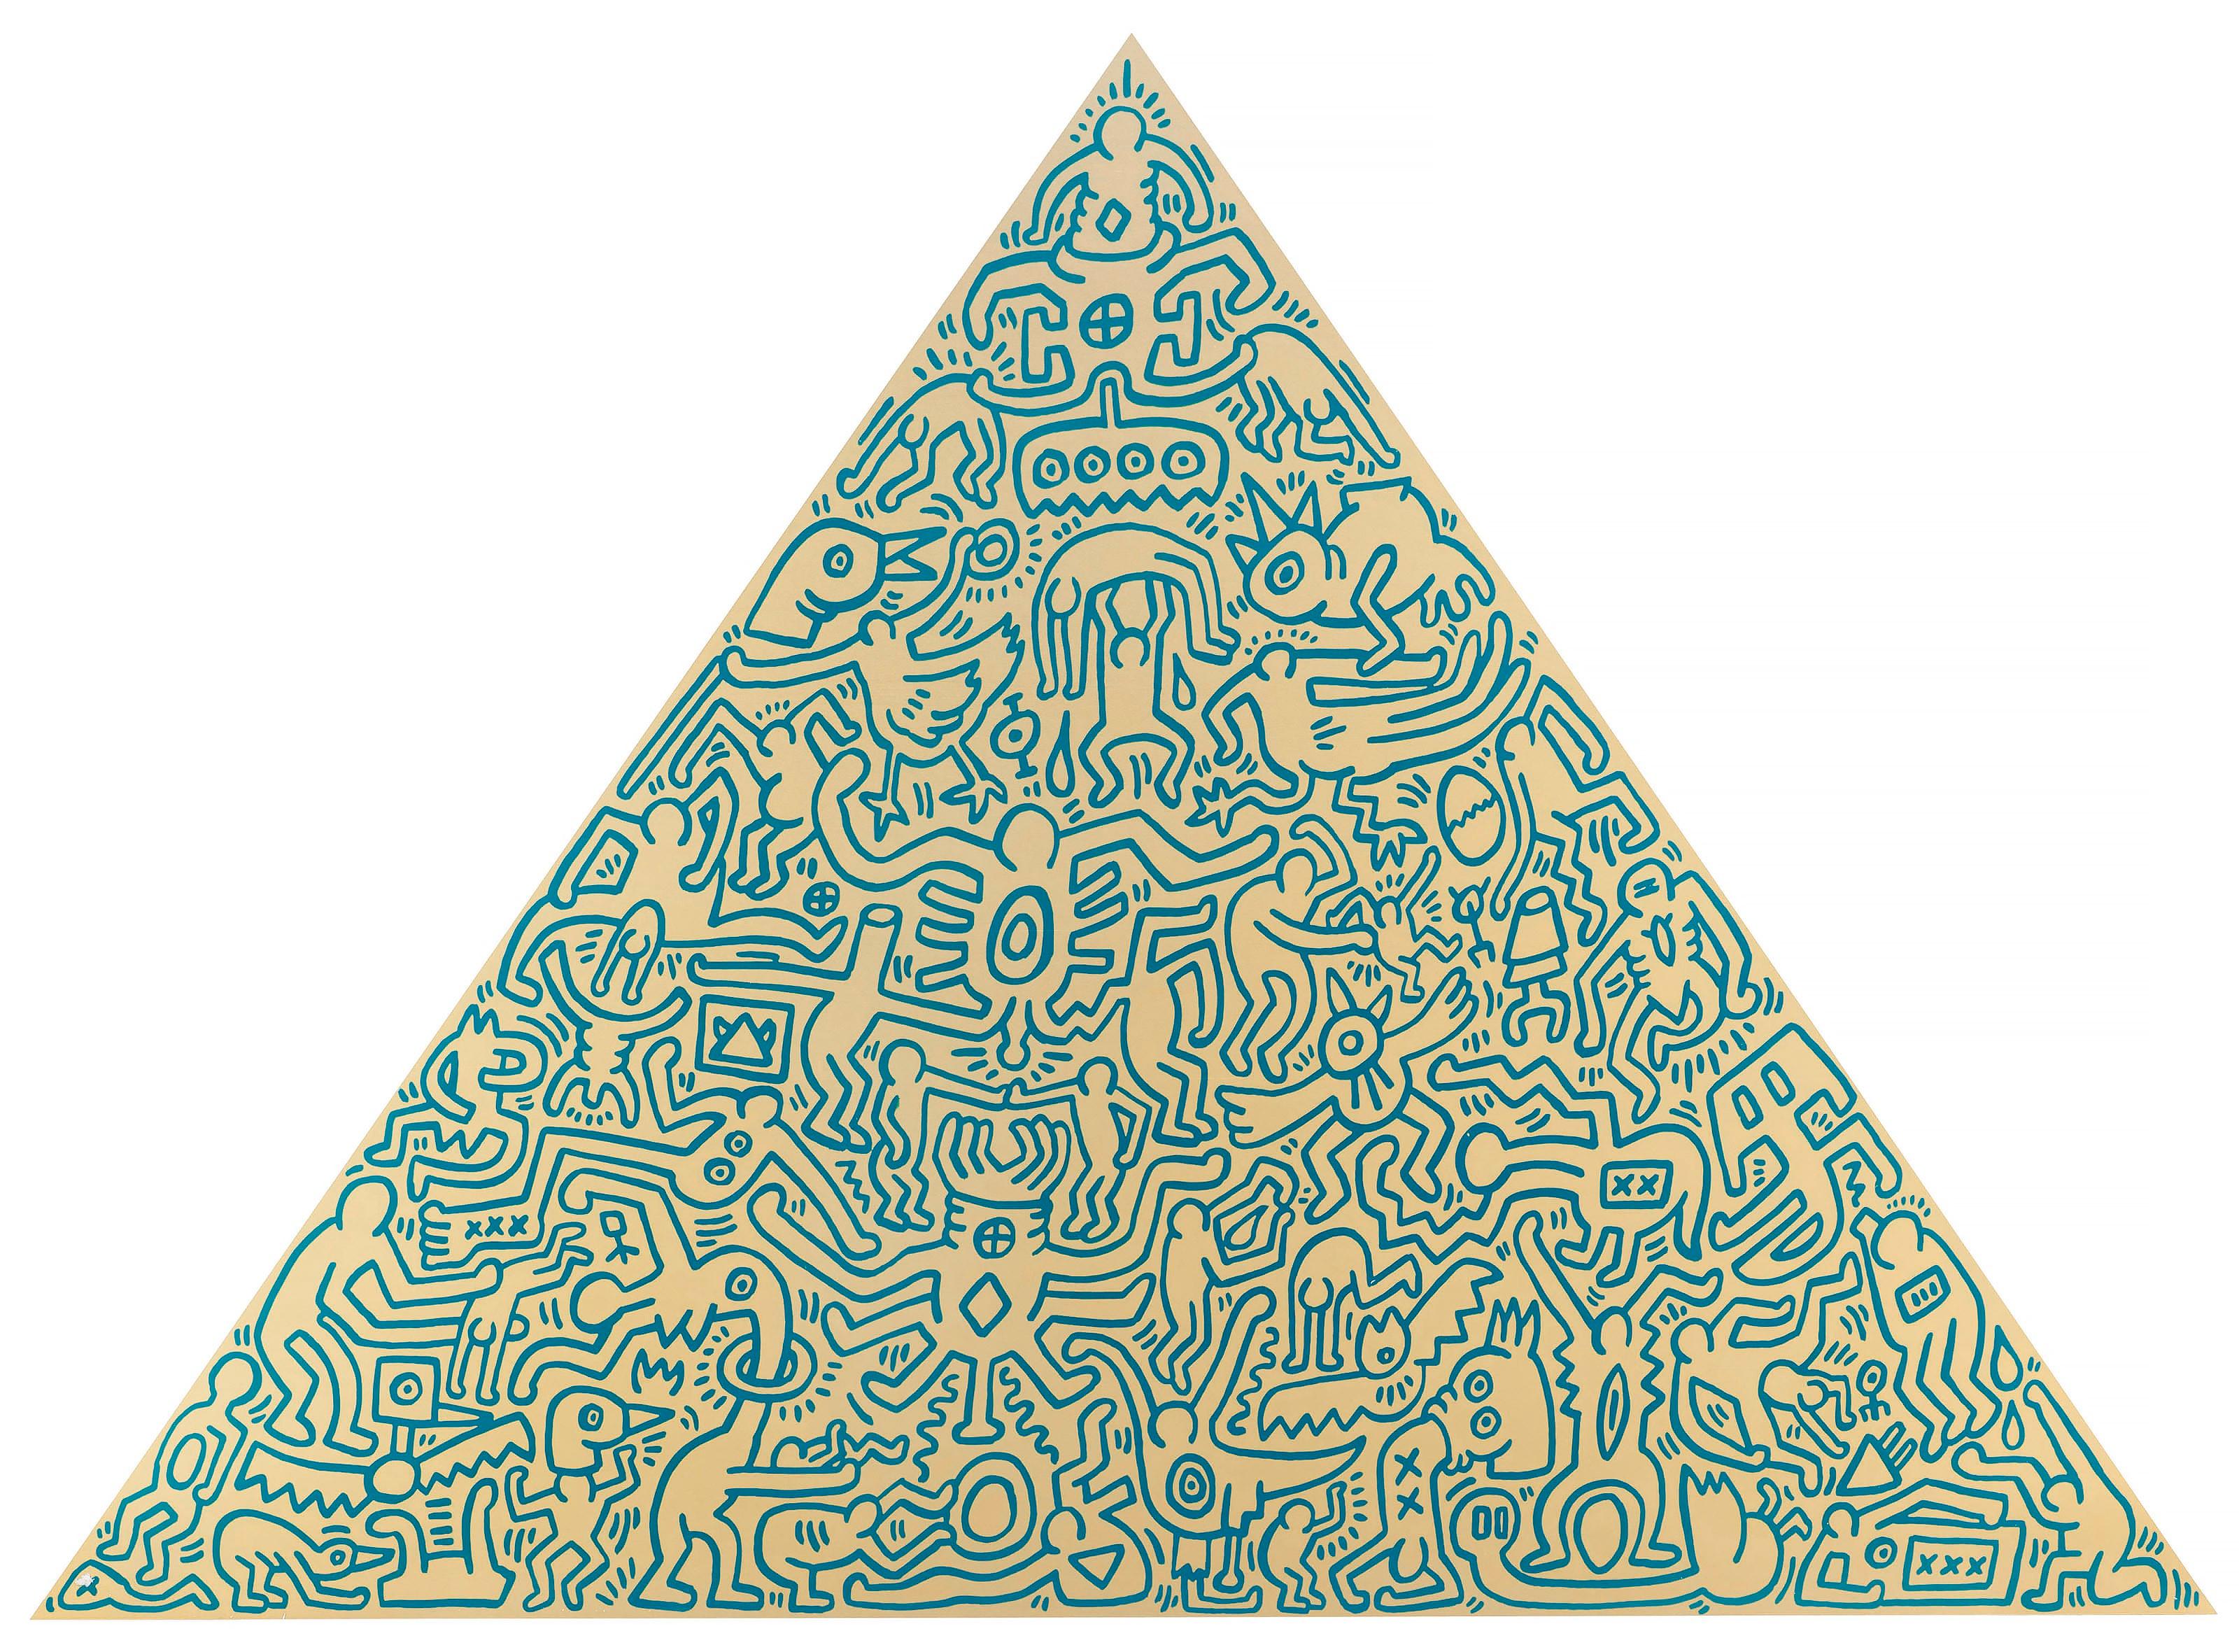 Keith Haring Abstract Sculpture - Pyramid